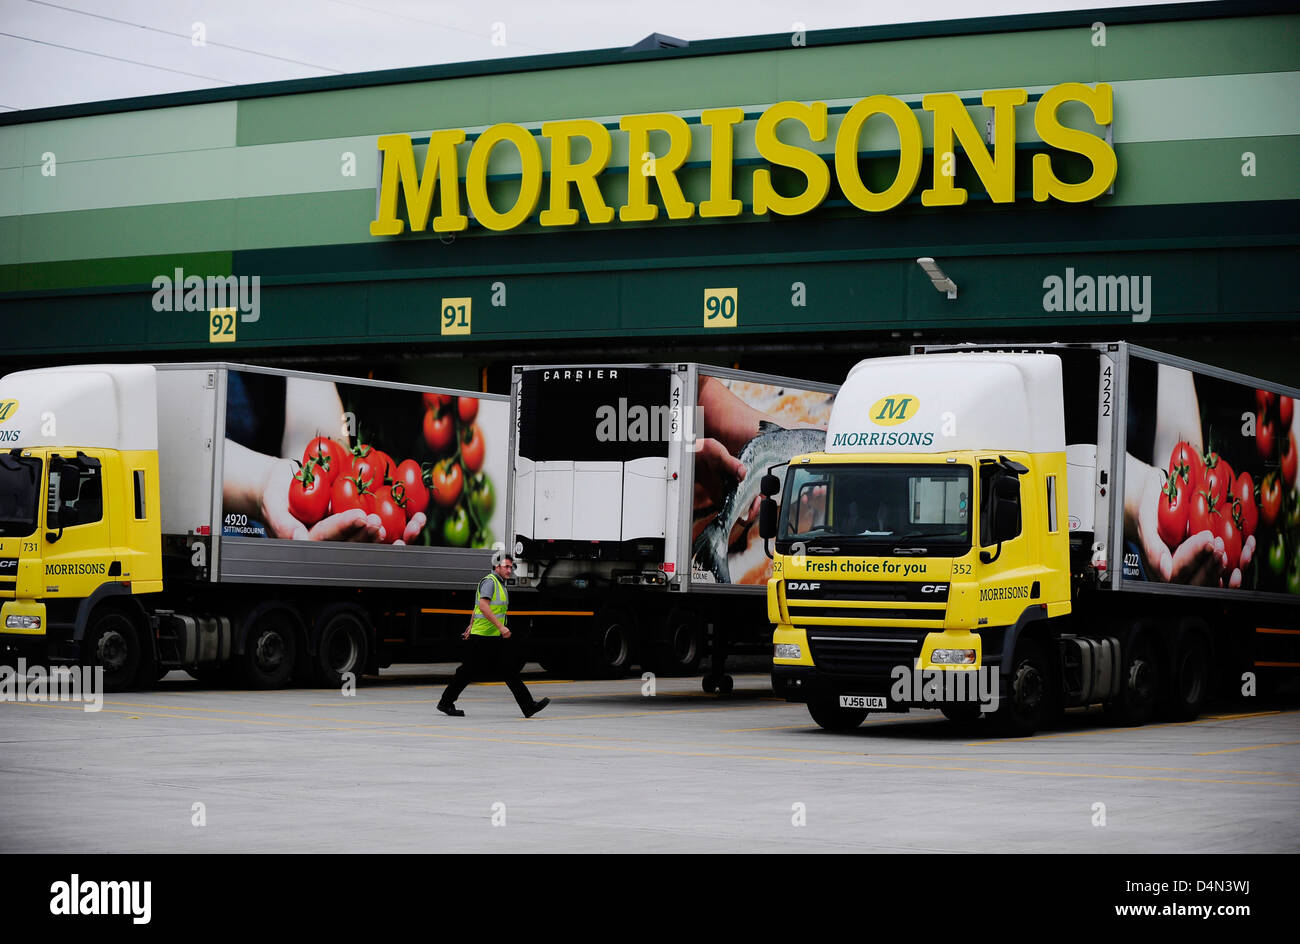 Tienda supermercado Morrison, con camiones de entrega Foto de stock